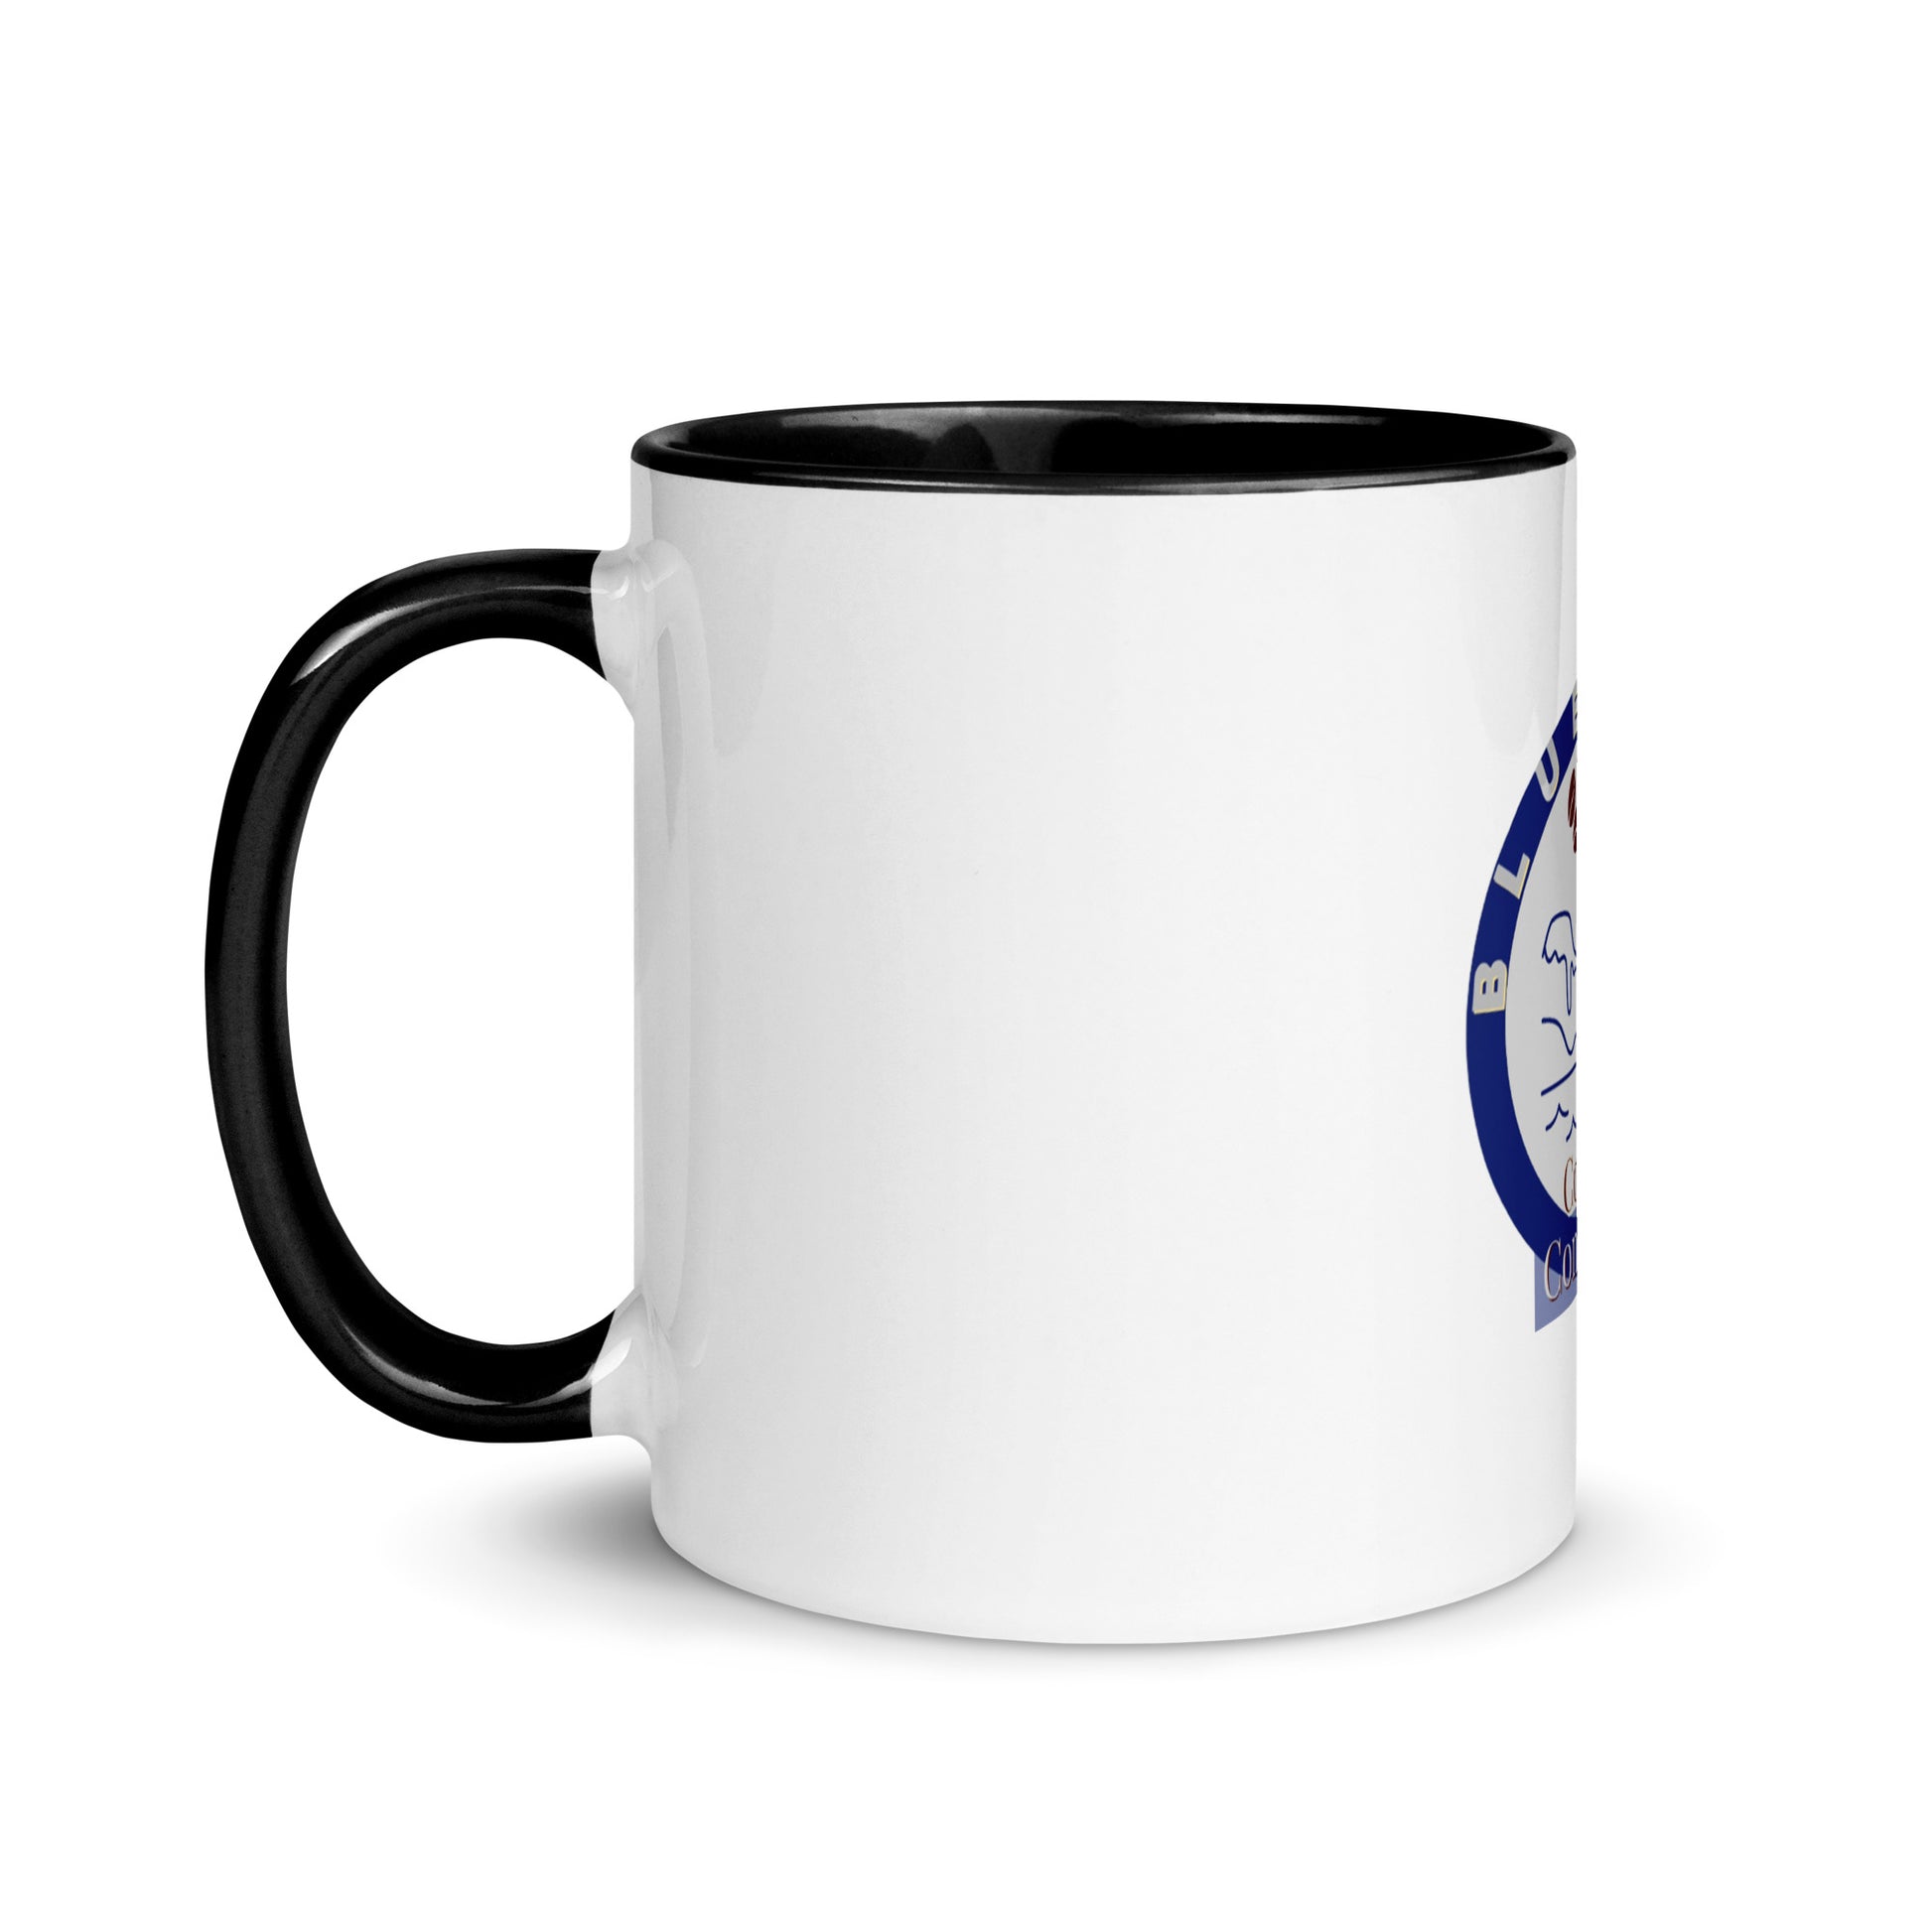 https://bluebaycoffee.com/cdn/shop/products/white-ceramic-mug-with-color-inside-black-11oz-left-63ebcb9ca1e3b.jpg?v=1676397509&width=1946